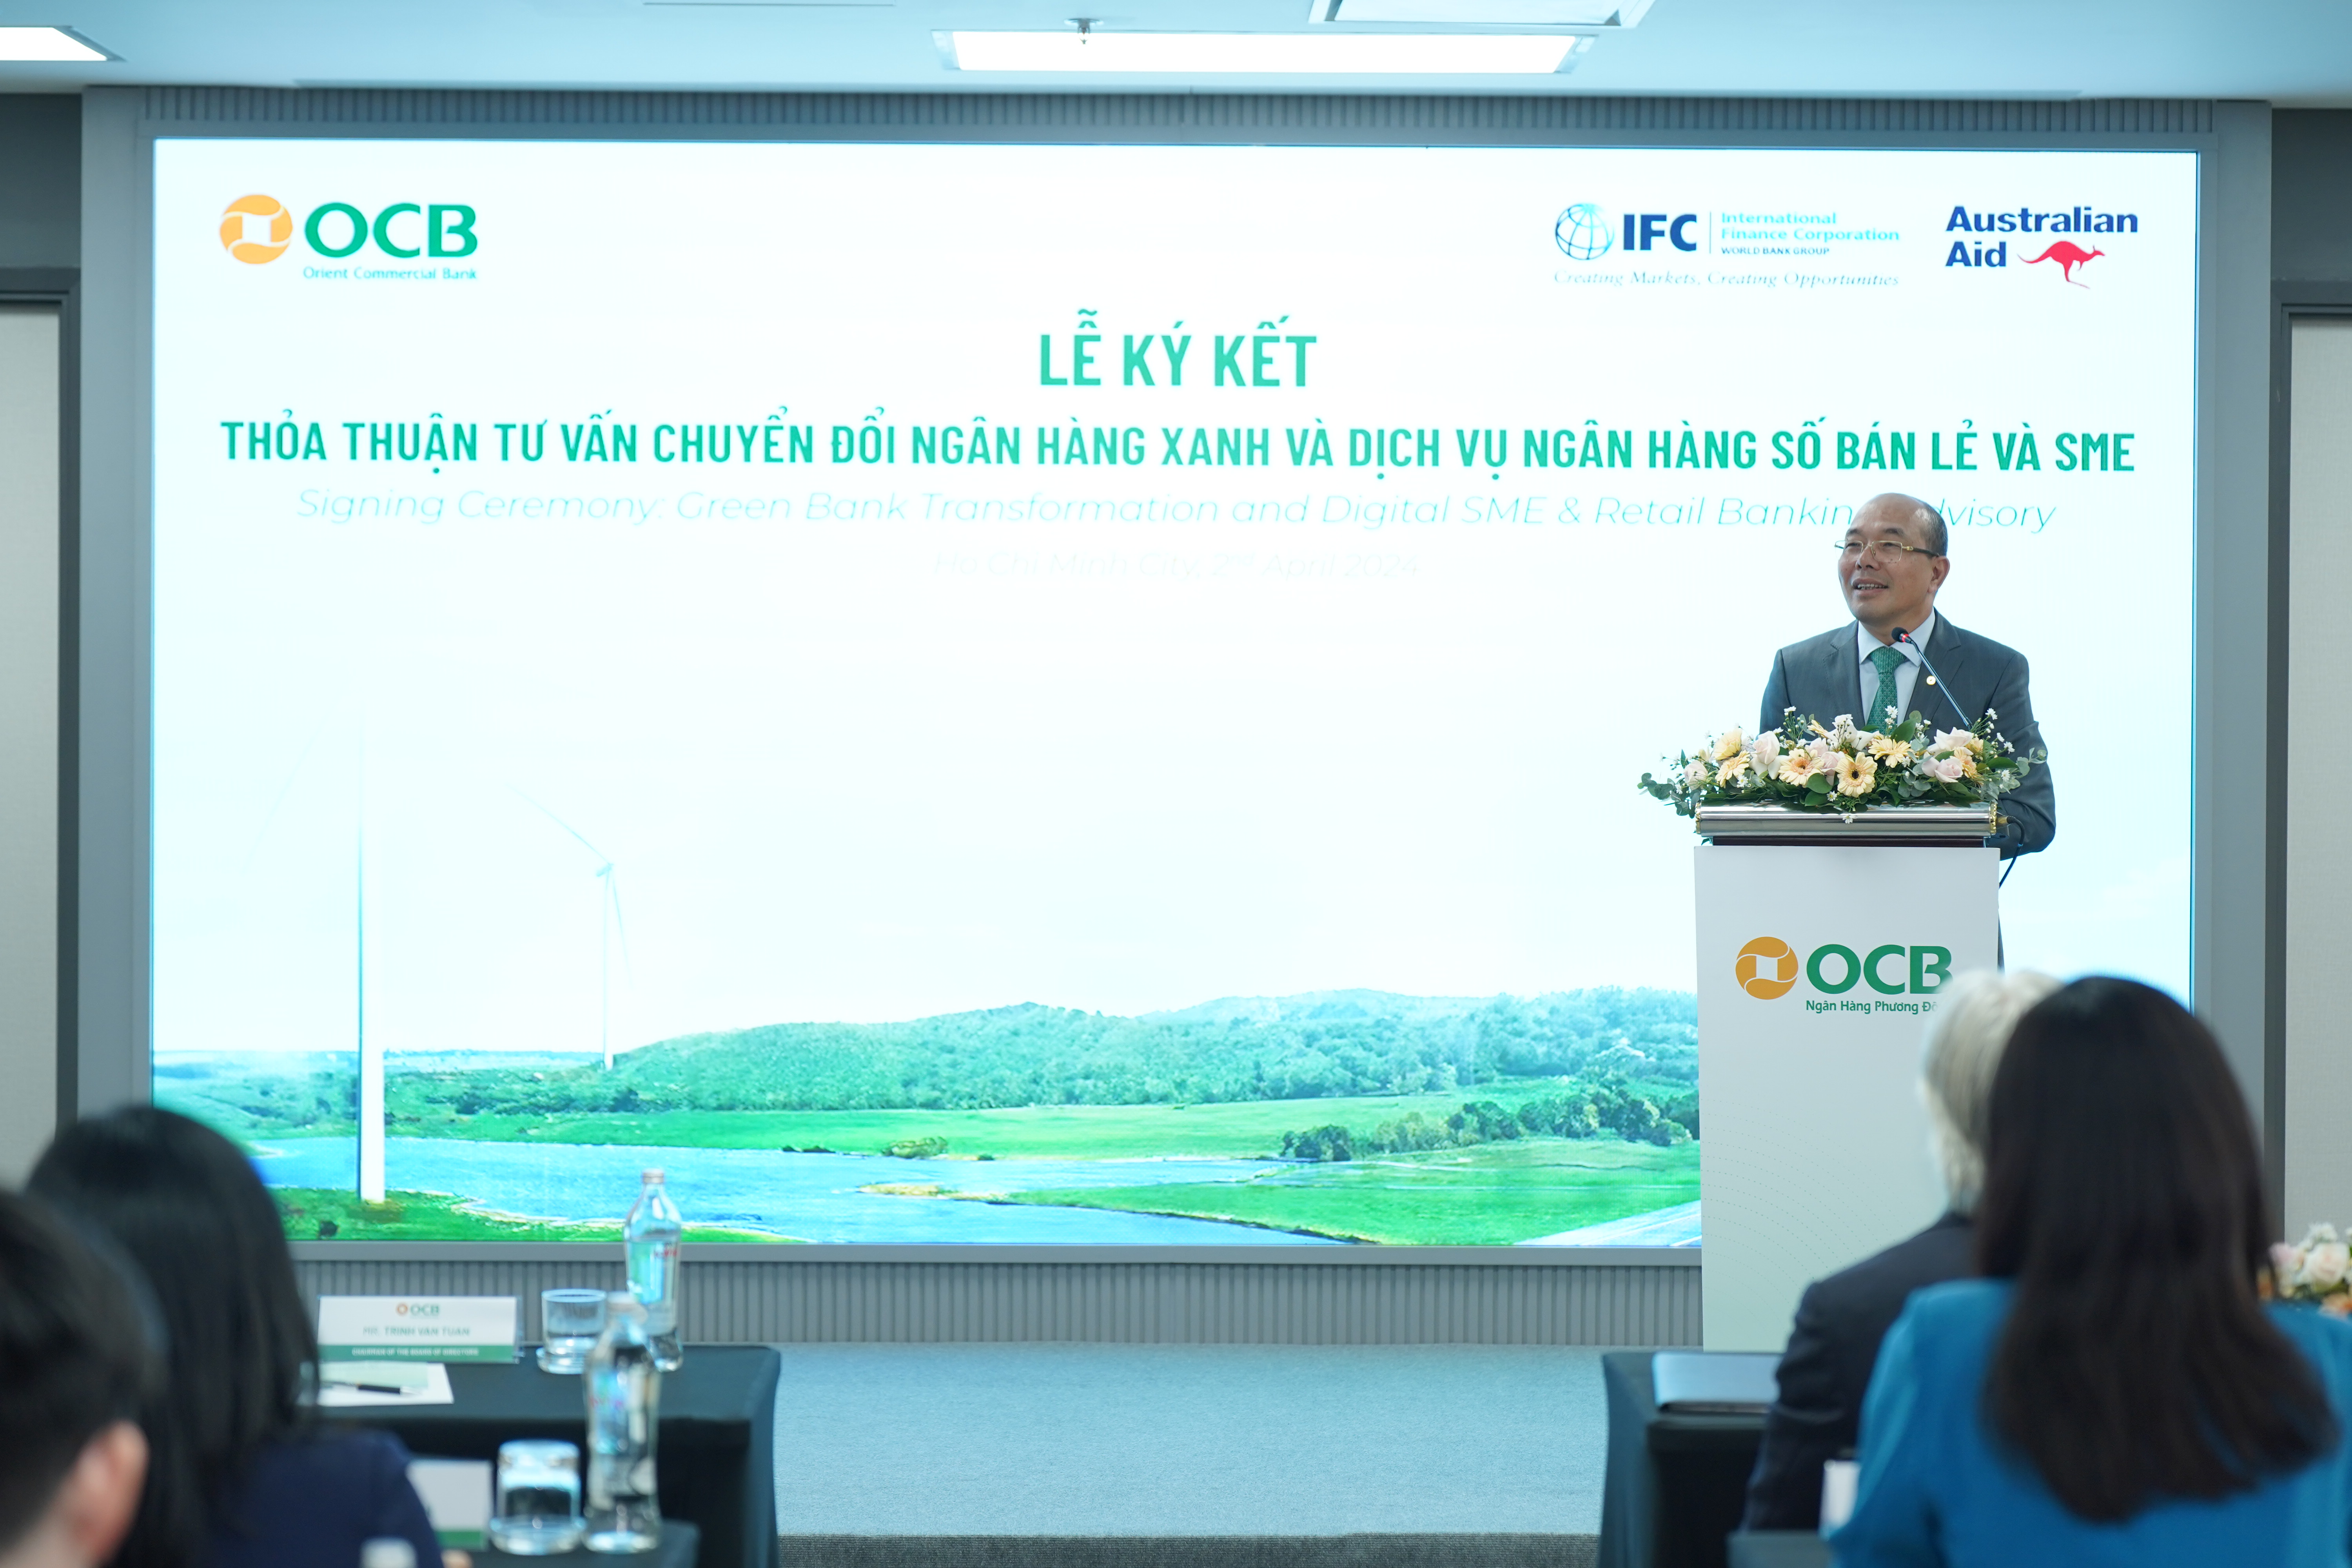 Ông Trịnh Văn Tuấn - Chủ tịch HĐQT OCB chia sẻ về mục tiêu đưa OCB trở thành ngân hàng xanh đầu tiên tại Việt Nam.